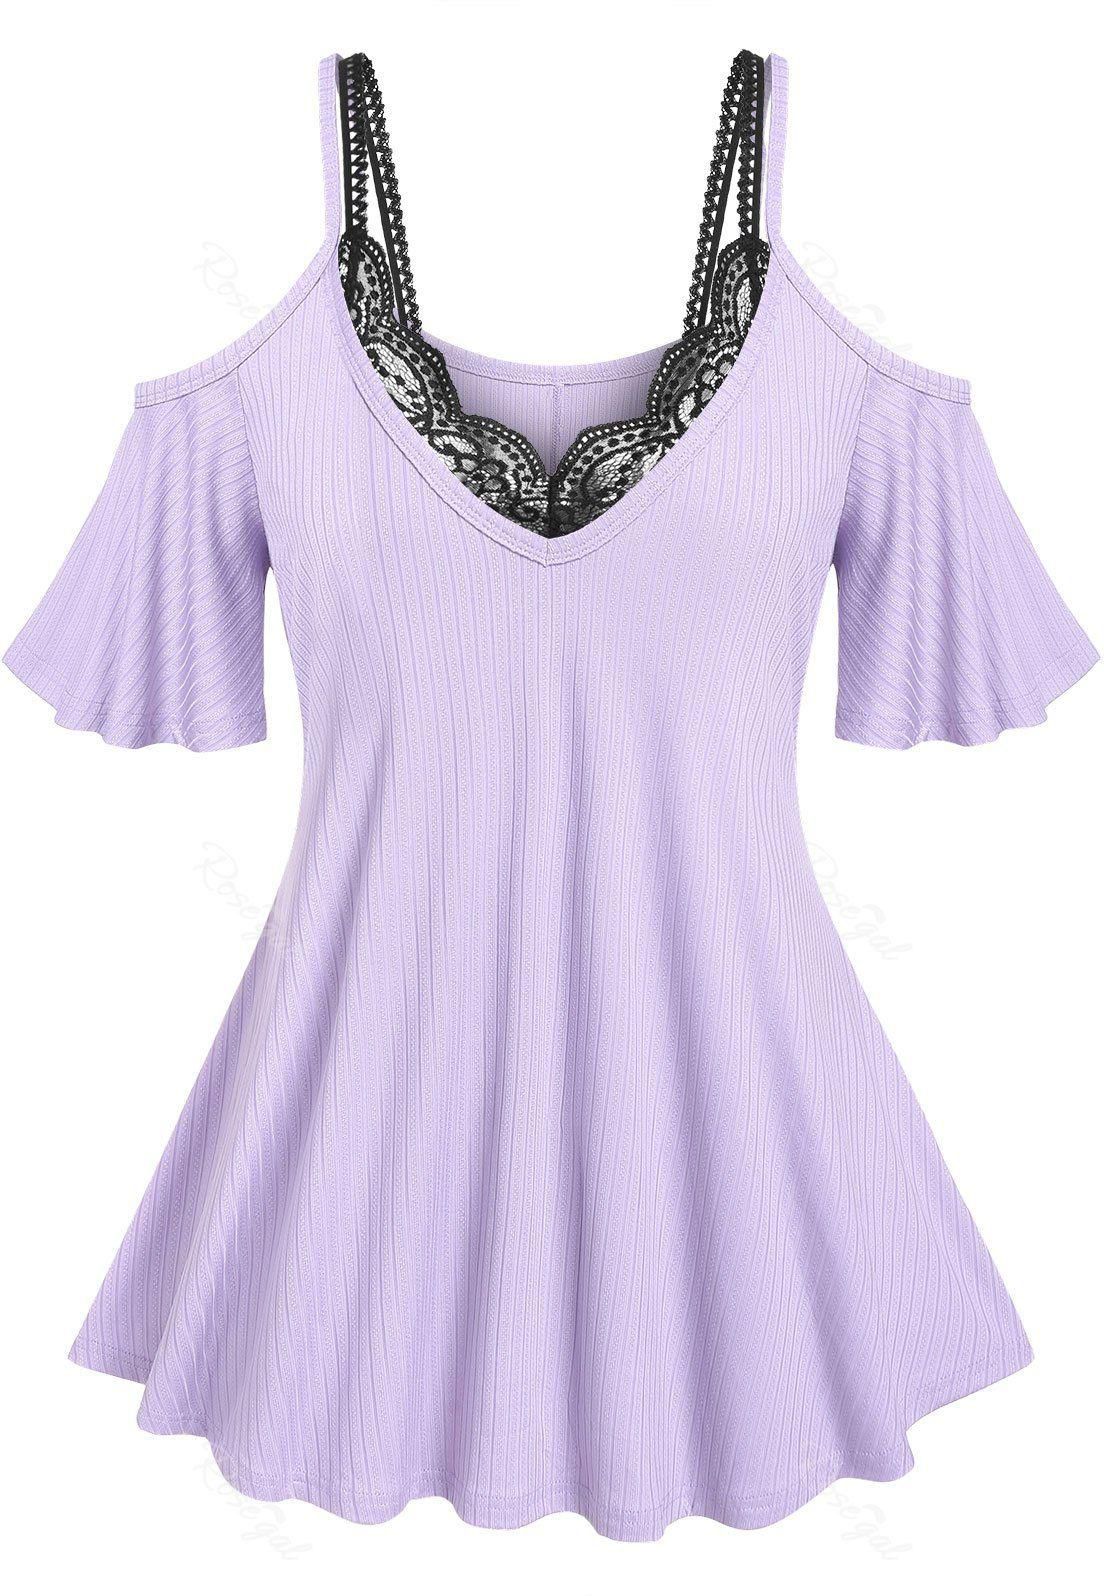 Plus Size & Curve Ribbed Open Shoulder T-shirt and Lace Bralette Top Set - L